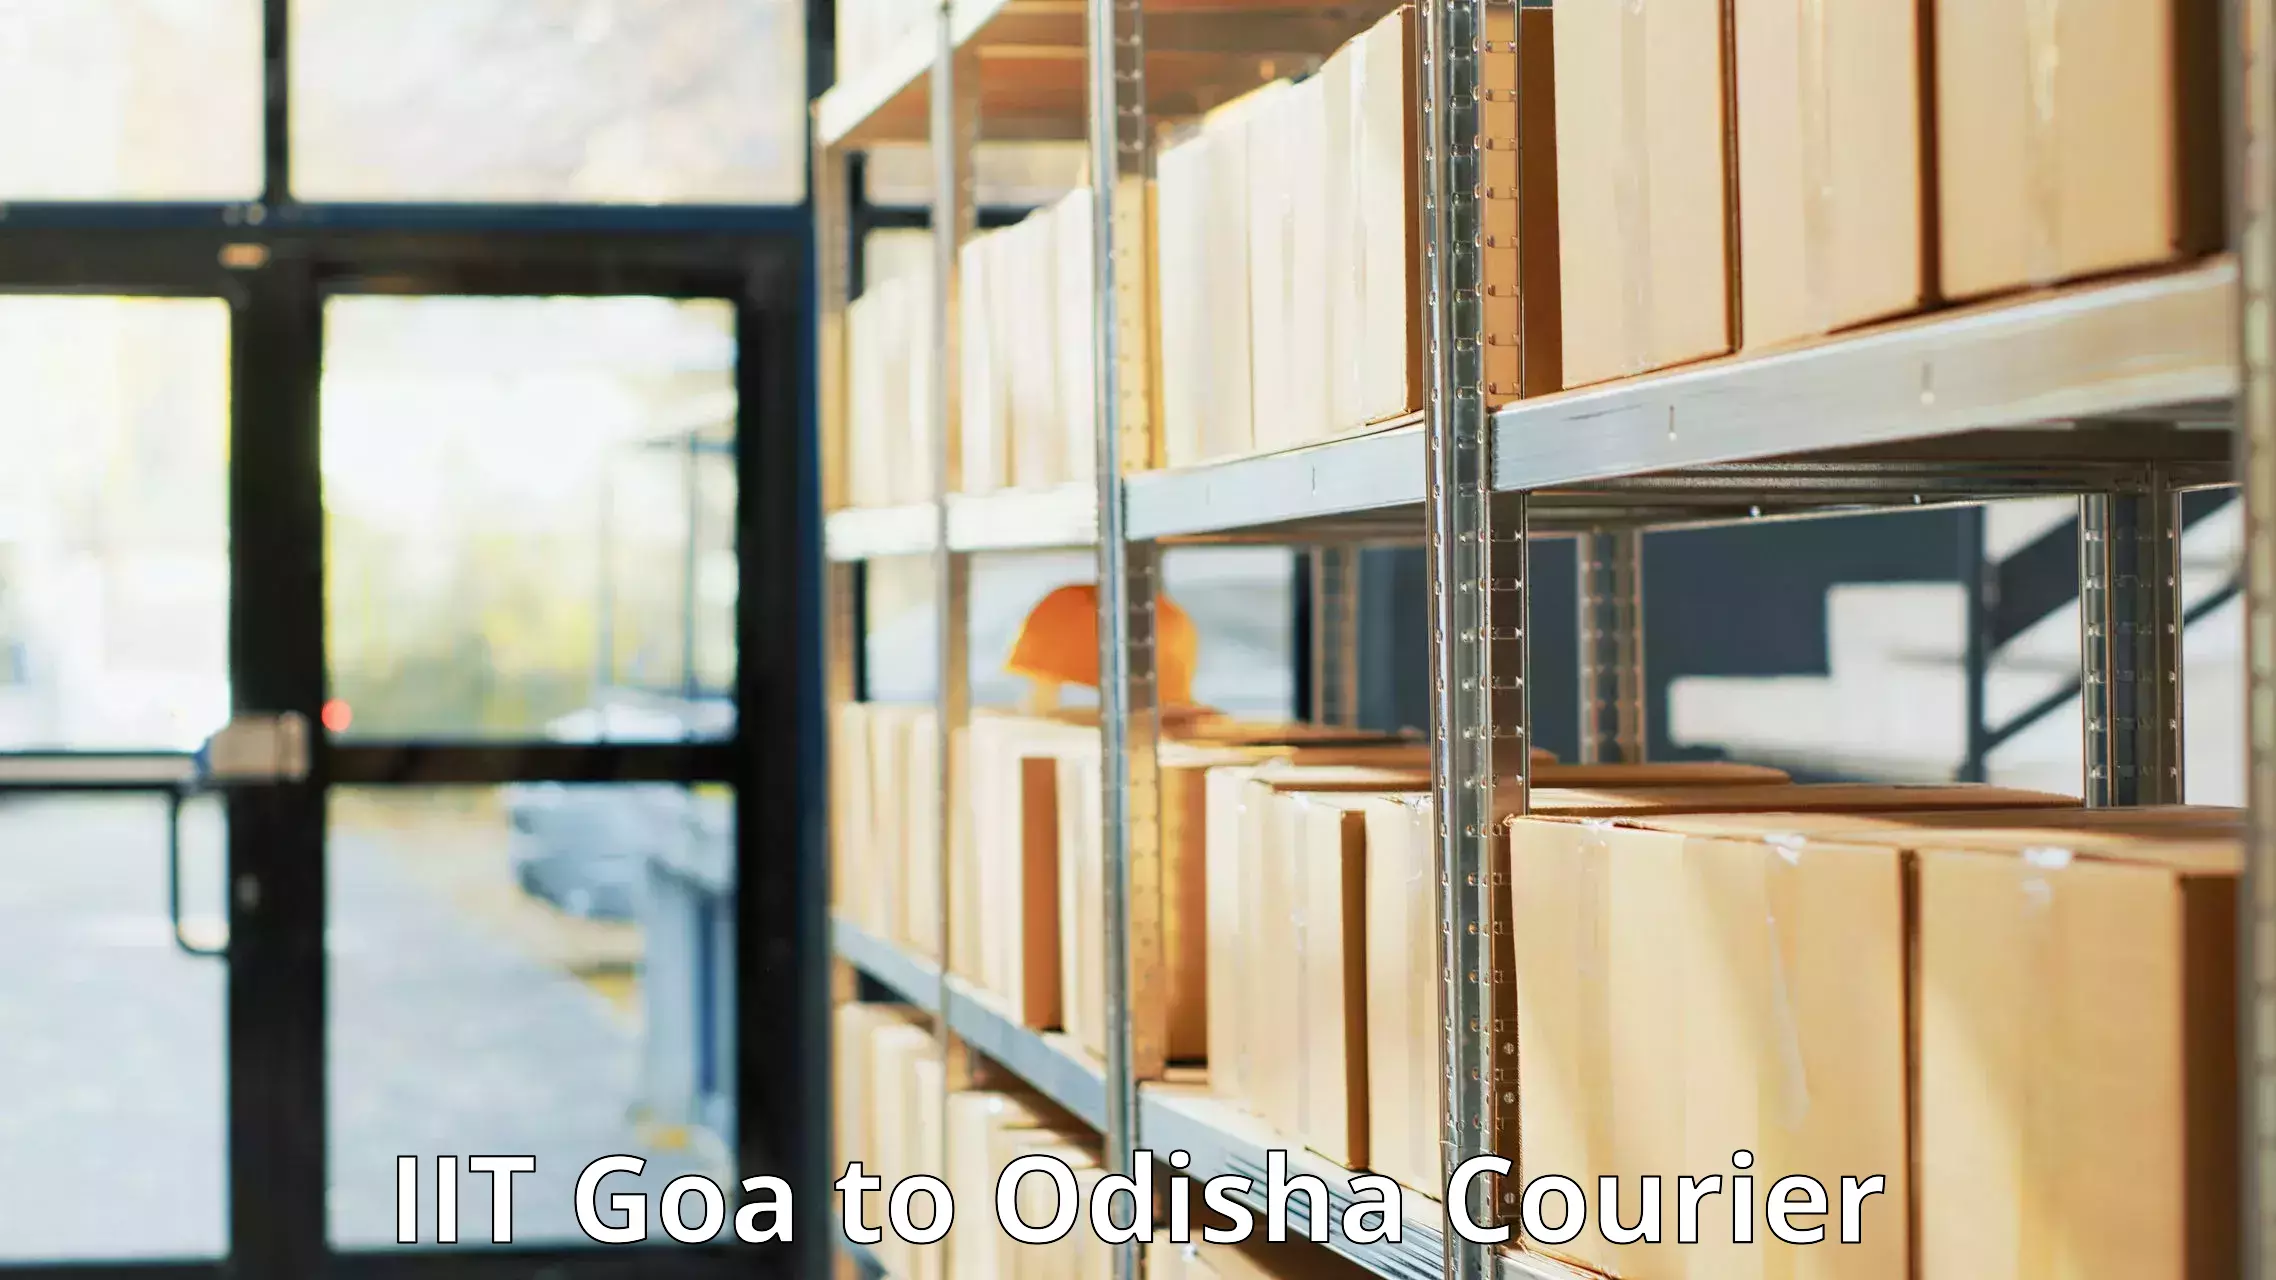 Digital courier platforms IIT Goa to Borigumma